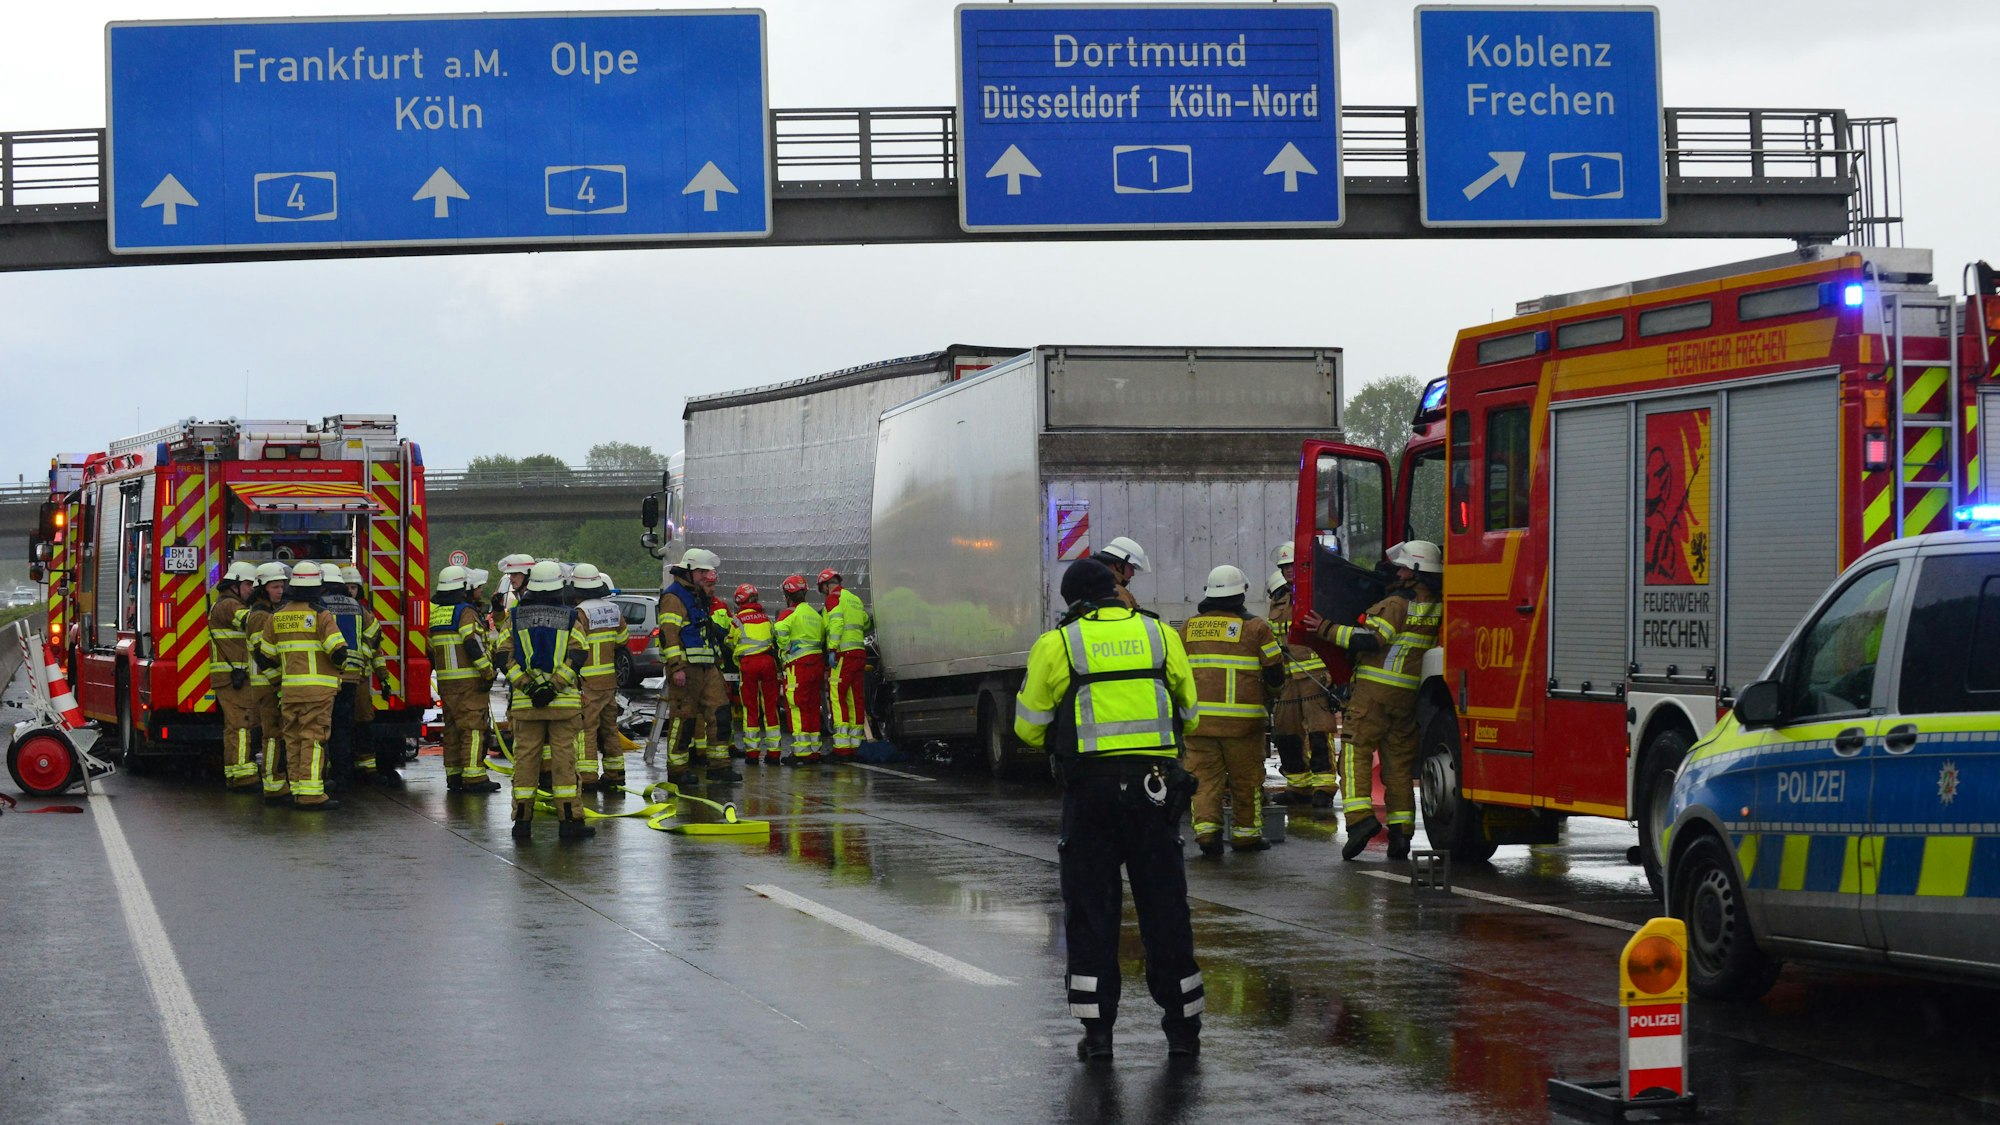 Einsatzkräfte von Polizei und Feuerwehr sowie Einsatzfahrzeug stehen auf der Autobahn, wo ein Transporter auf einen Lkw aufgefahren ist.